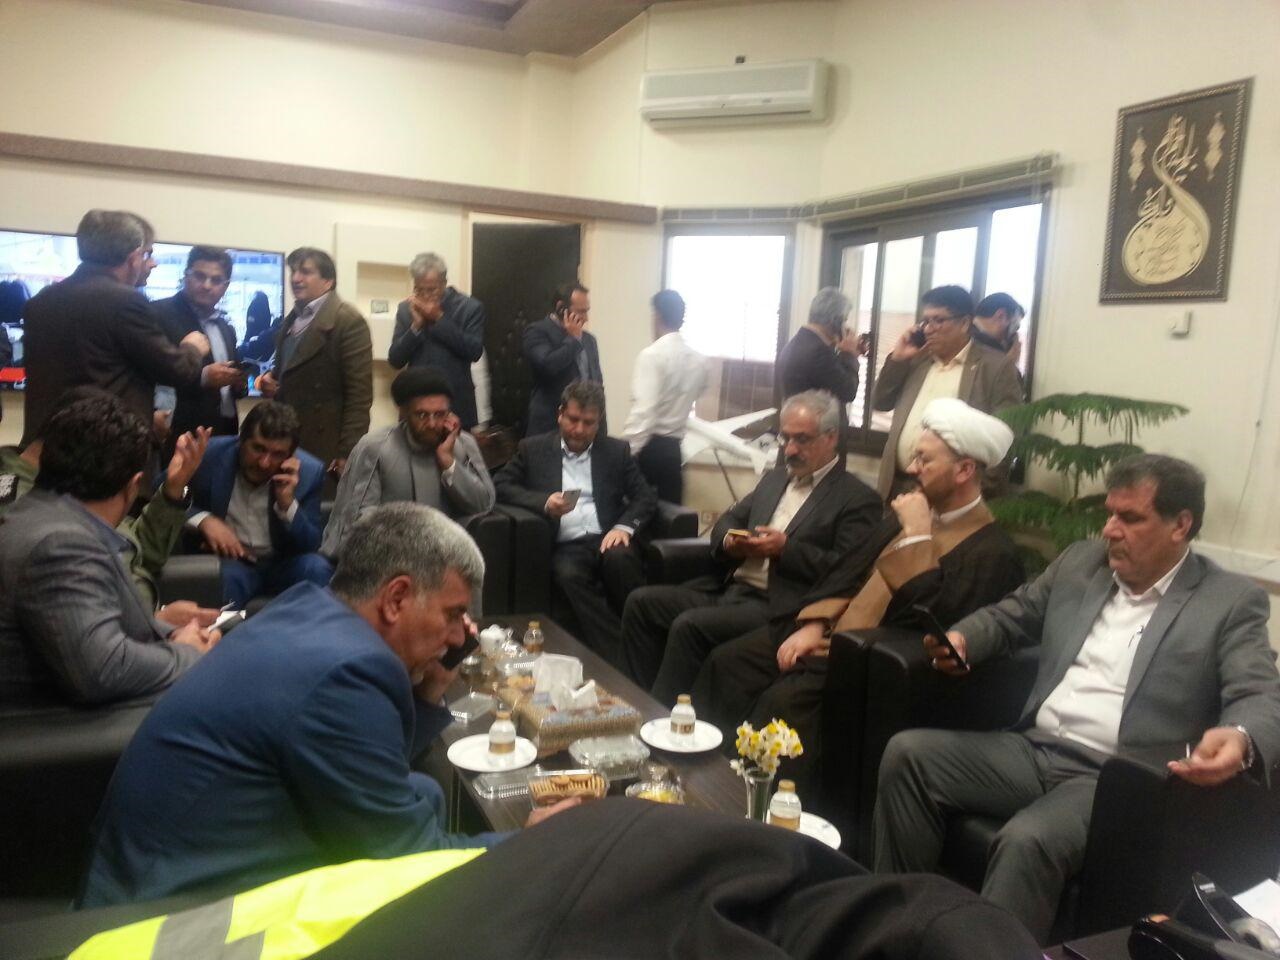 ۱۵اکیپ به منطقه سقوط هواپیمای تهران - یاسوج اعزام شدند